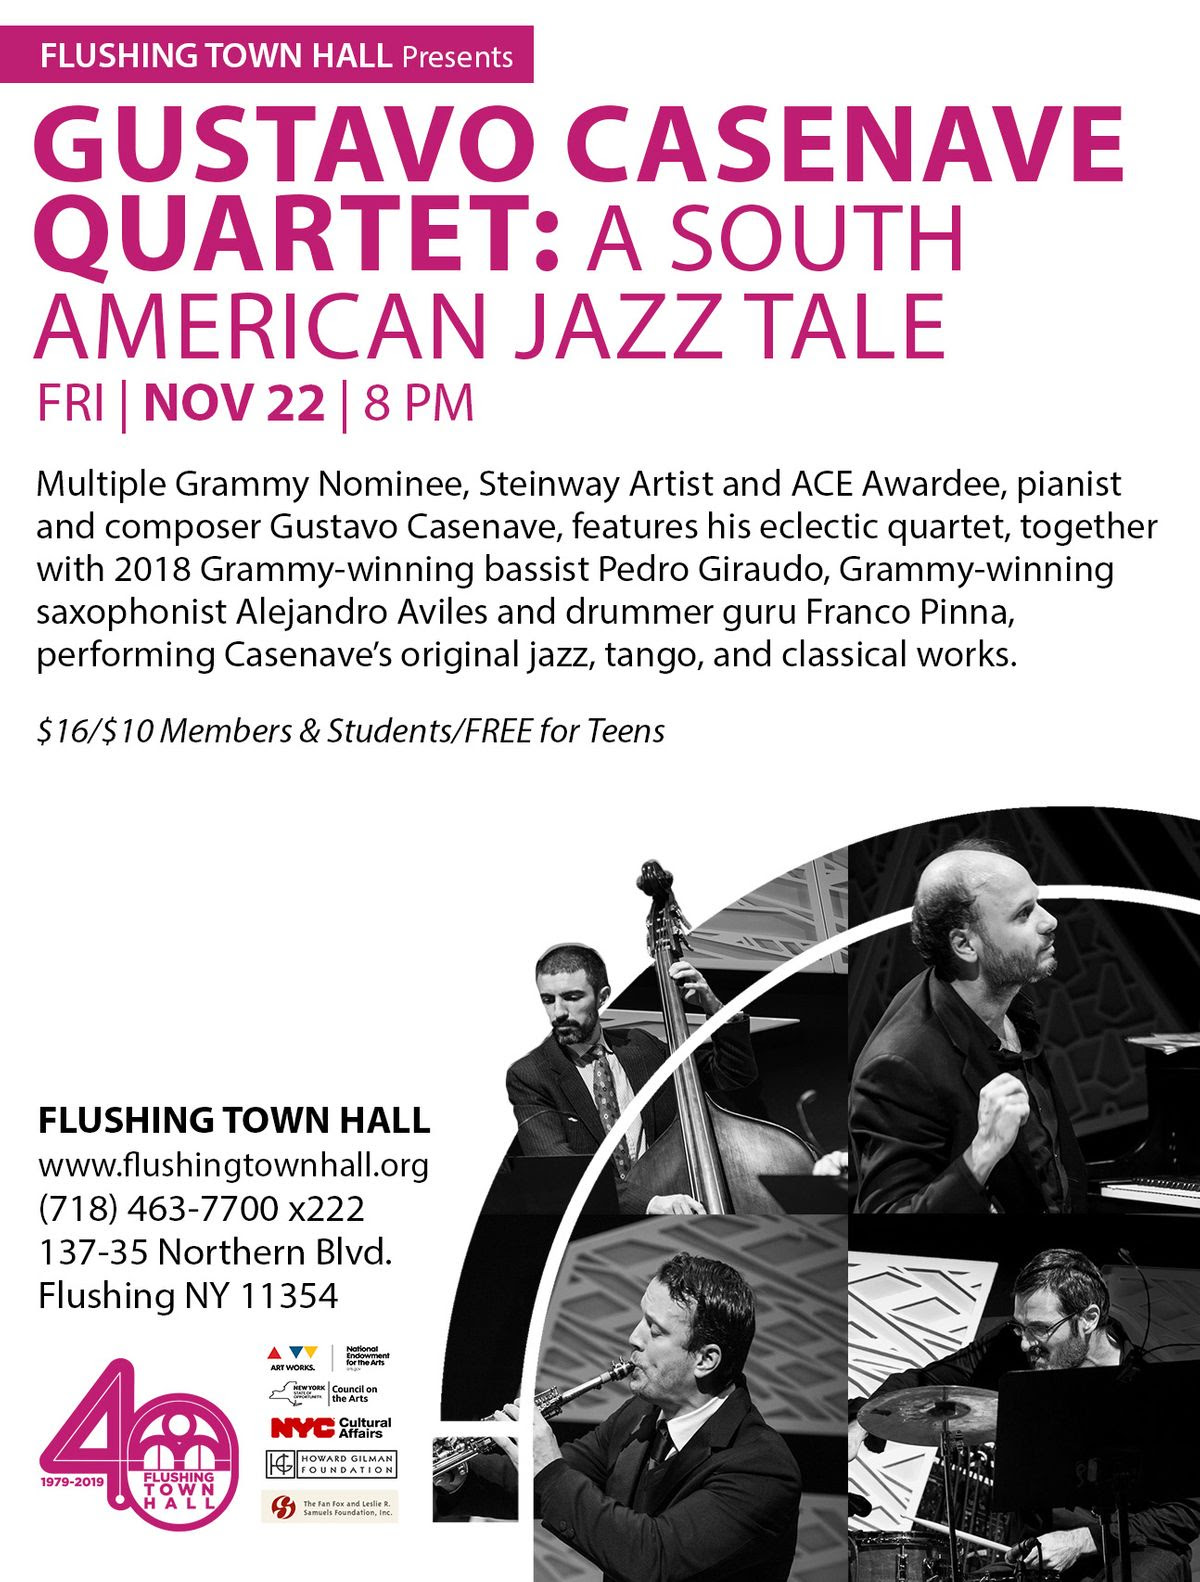 Cuarteto de jazz del músico uruguayo Gustavo Casenave se presenta en Nueva York